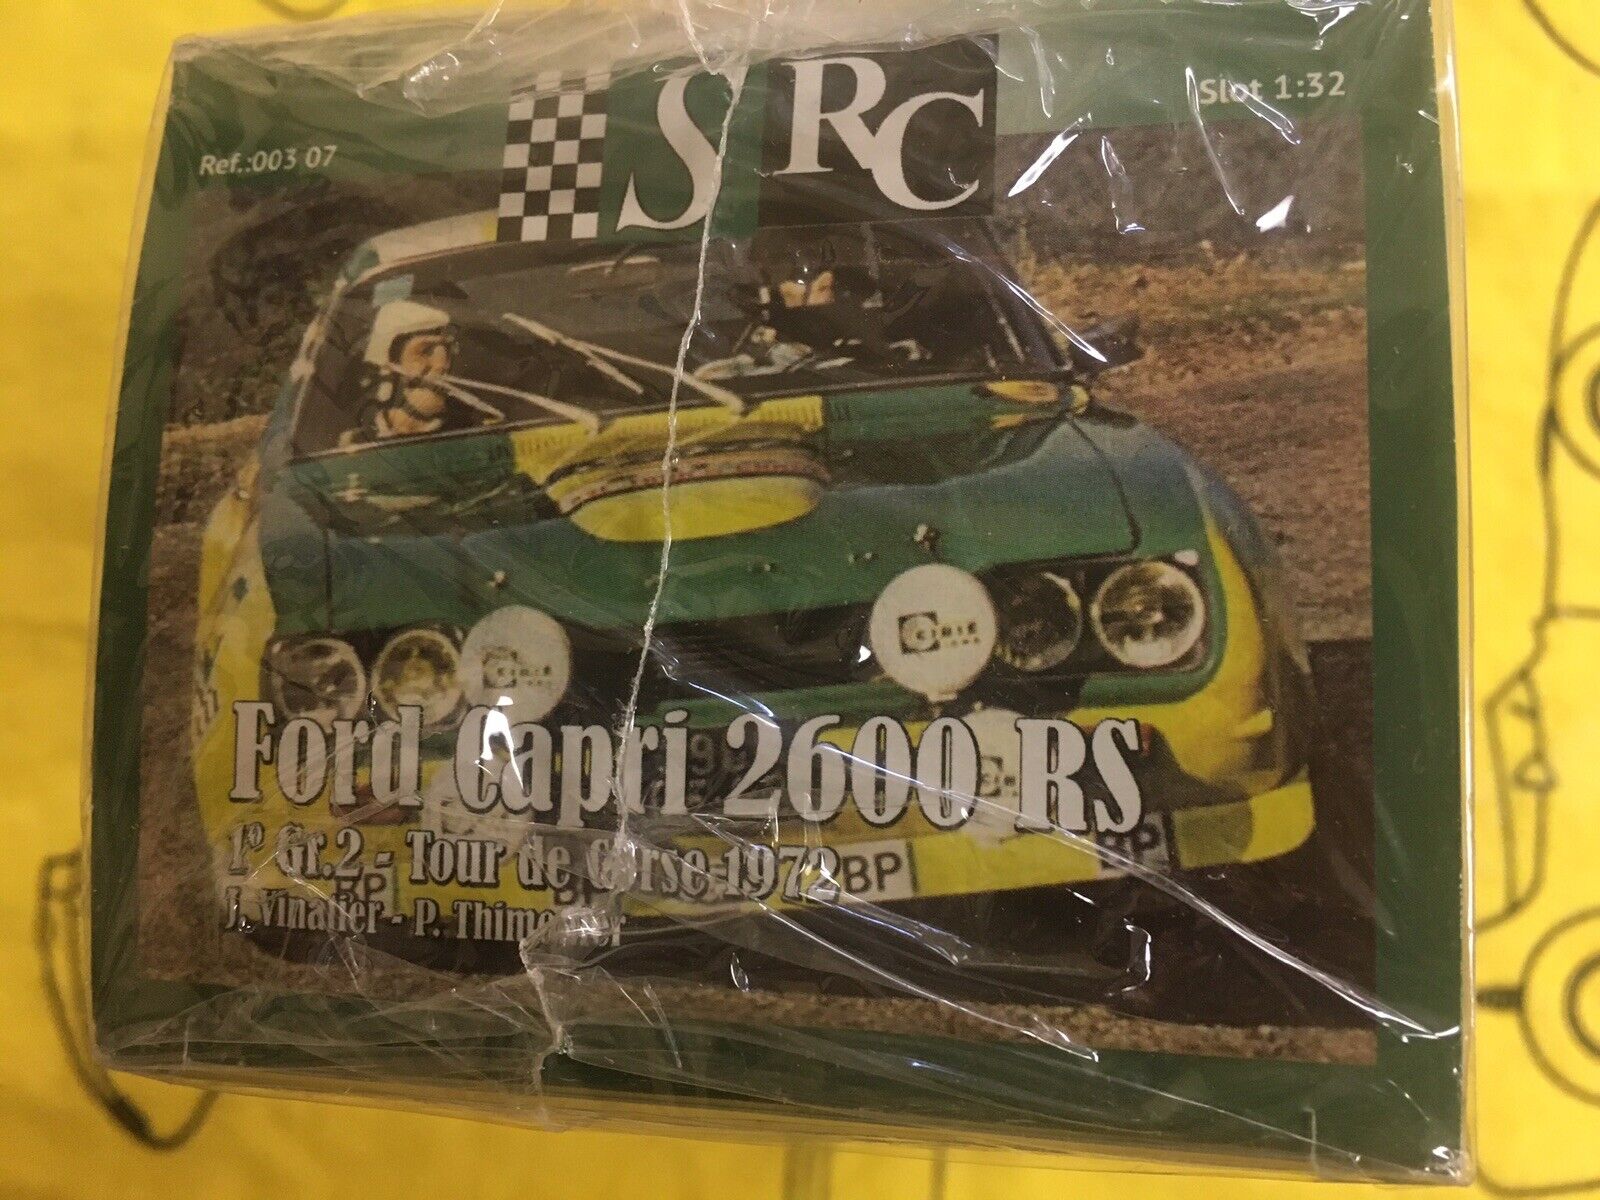 SRC 003 07 Large-scale sale Ford Capri 2600 RS Seal Japan Maker New Factory Tour New Corse de 72’